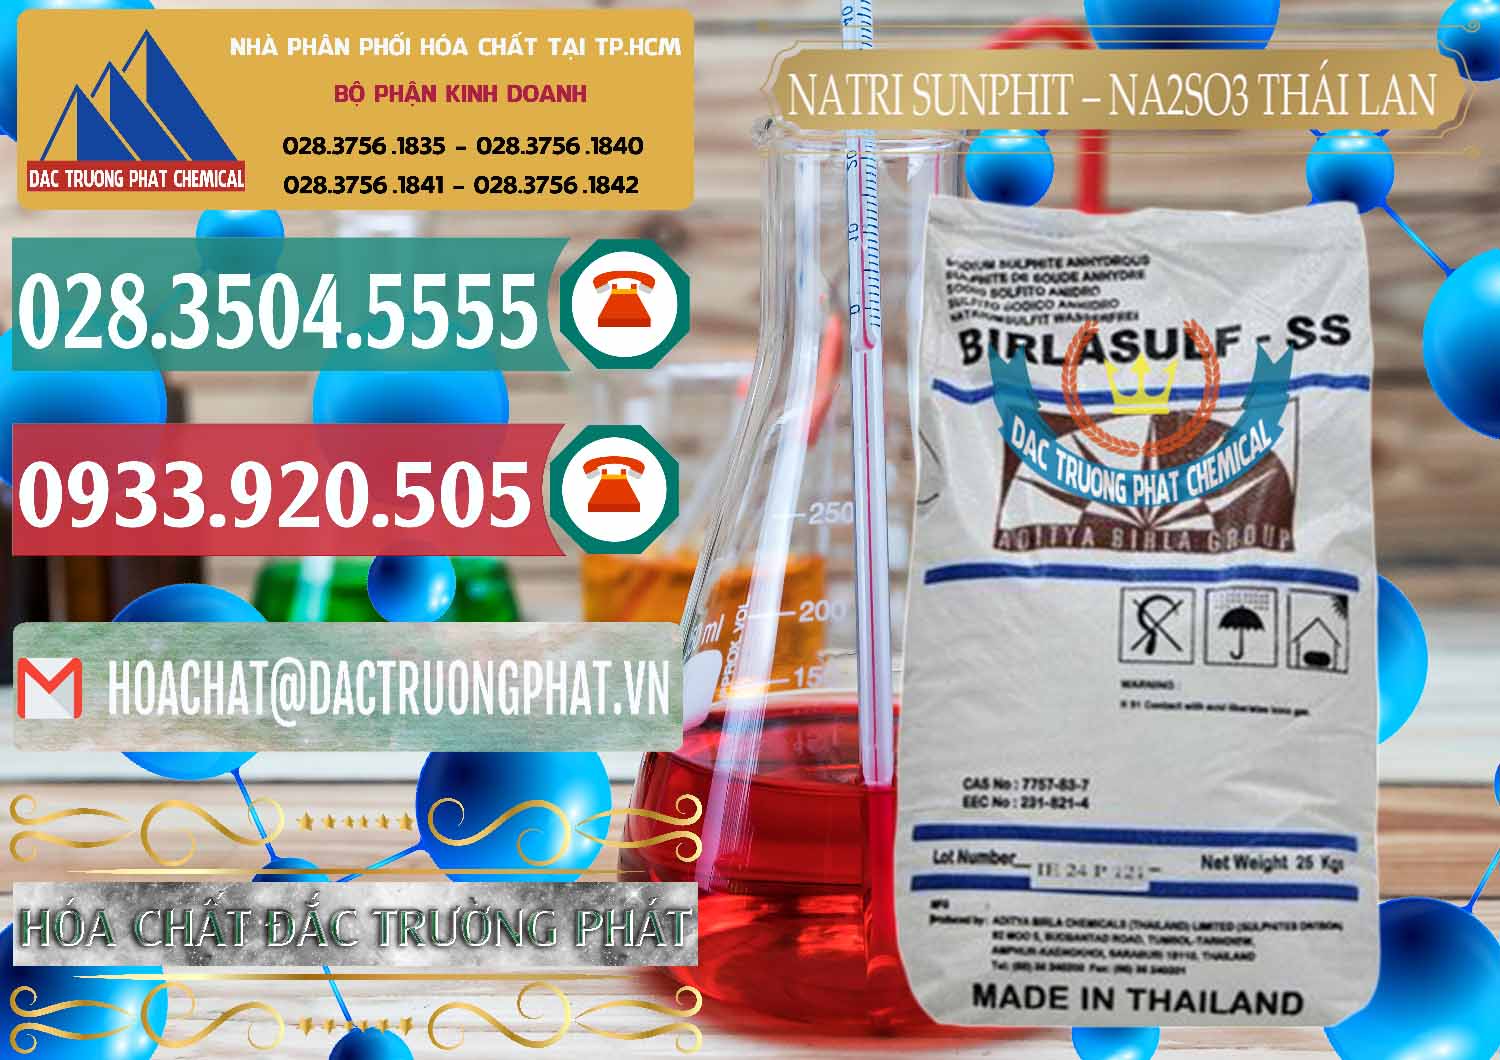 Nơi nhập khẩu và bán Natri Sunphit - NA2SO3 Thái Lan - 0105 - Công ty cung cấp và phân phối hóa chất tại TP.HCM - muabanhoachat.vn